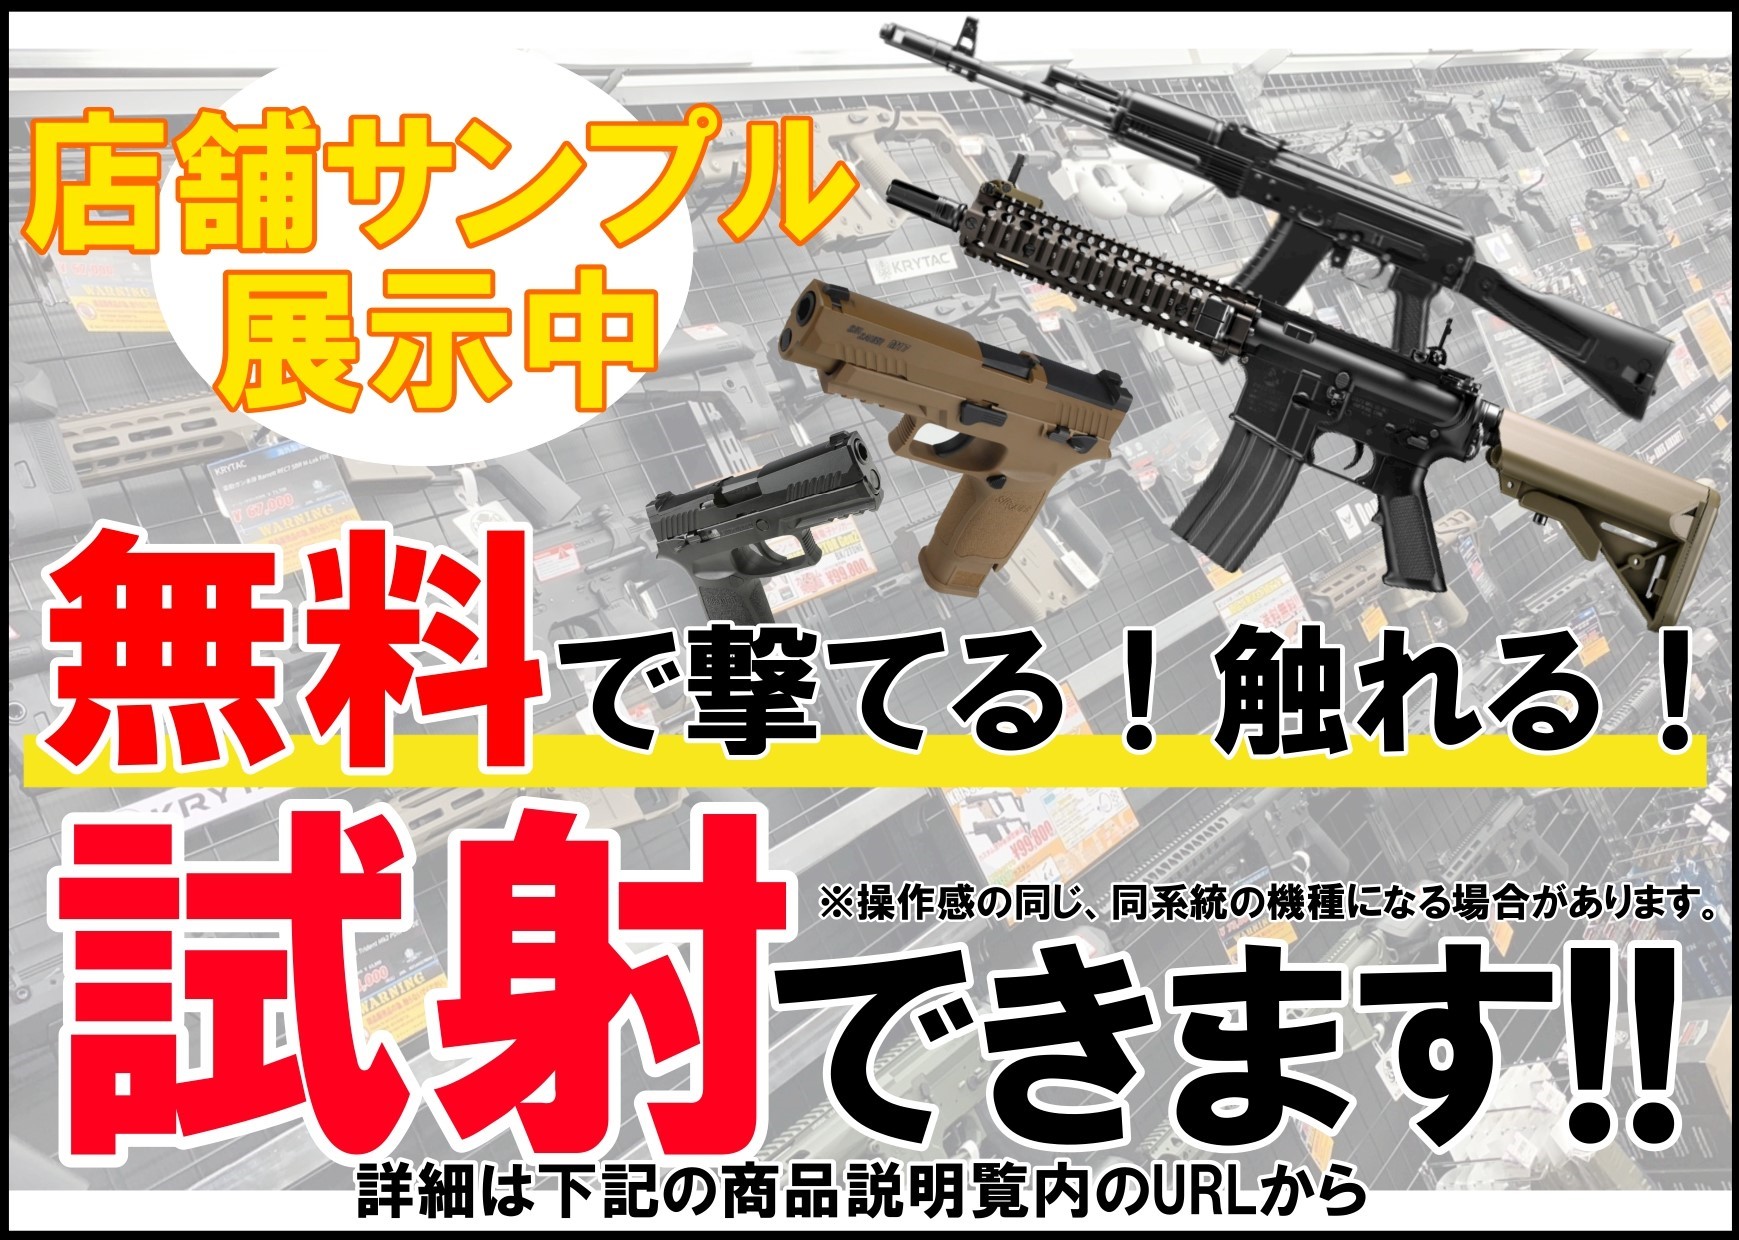 東京マルイ: MK18 MOD.1 ガスブローバックライフルの通販情報